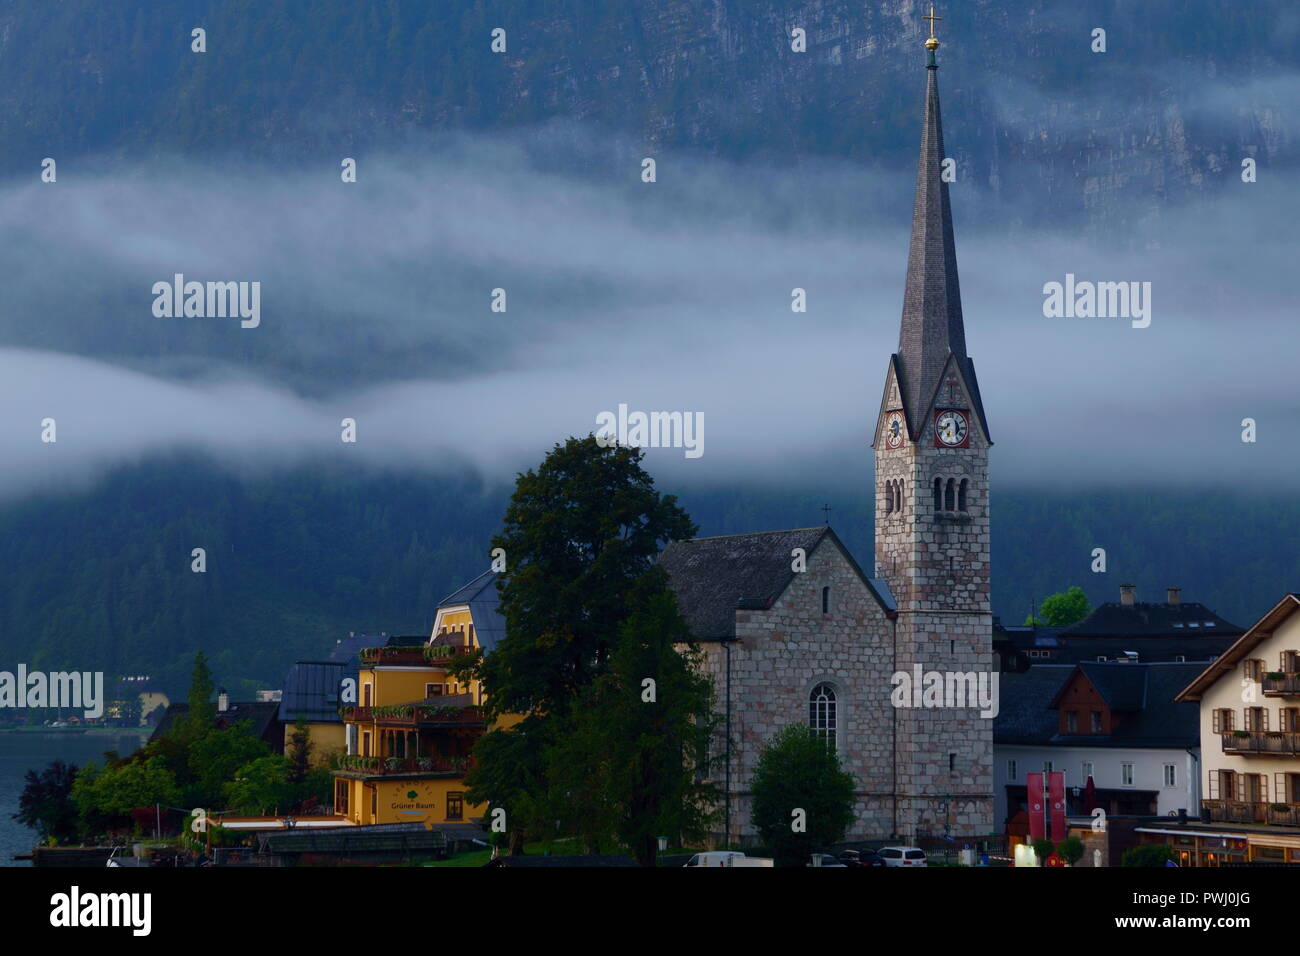 Beautiful village of Hallstatt, Austria Stock Photo